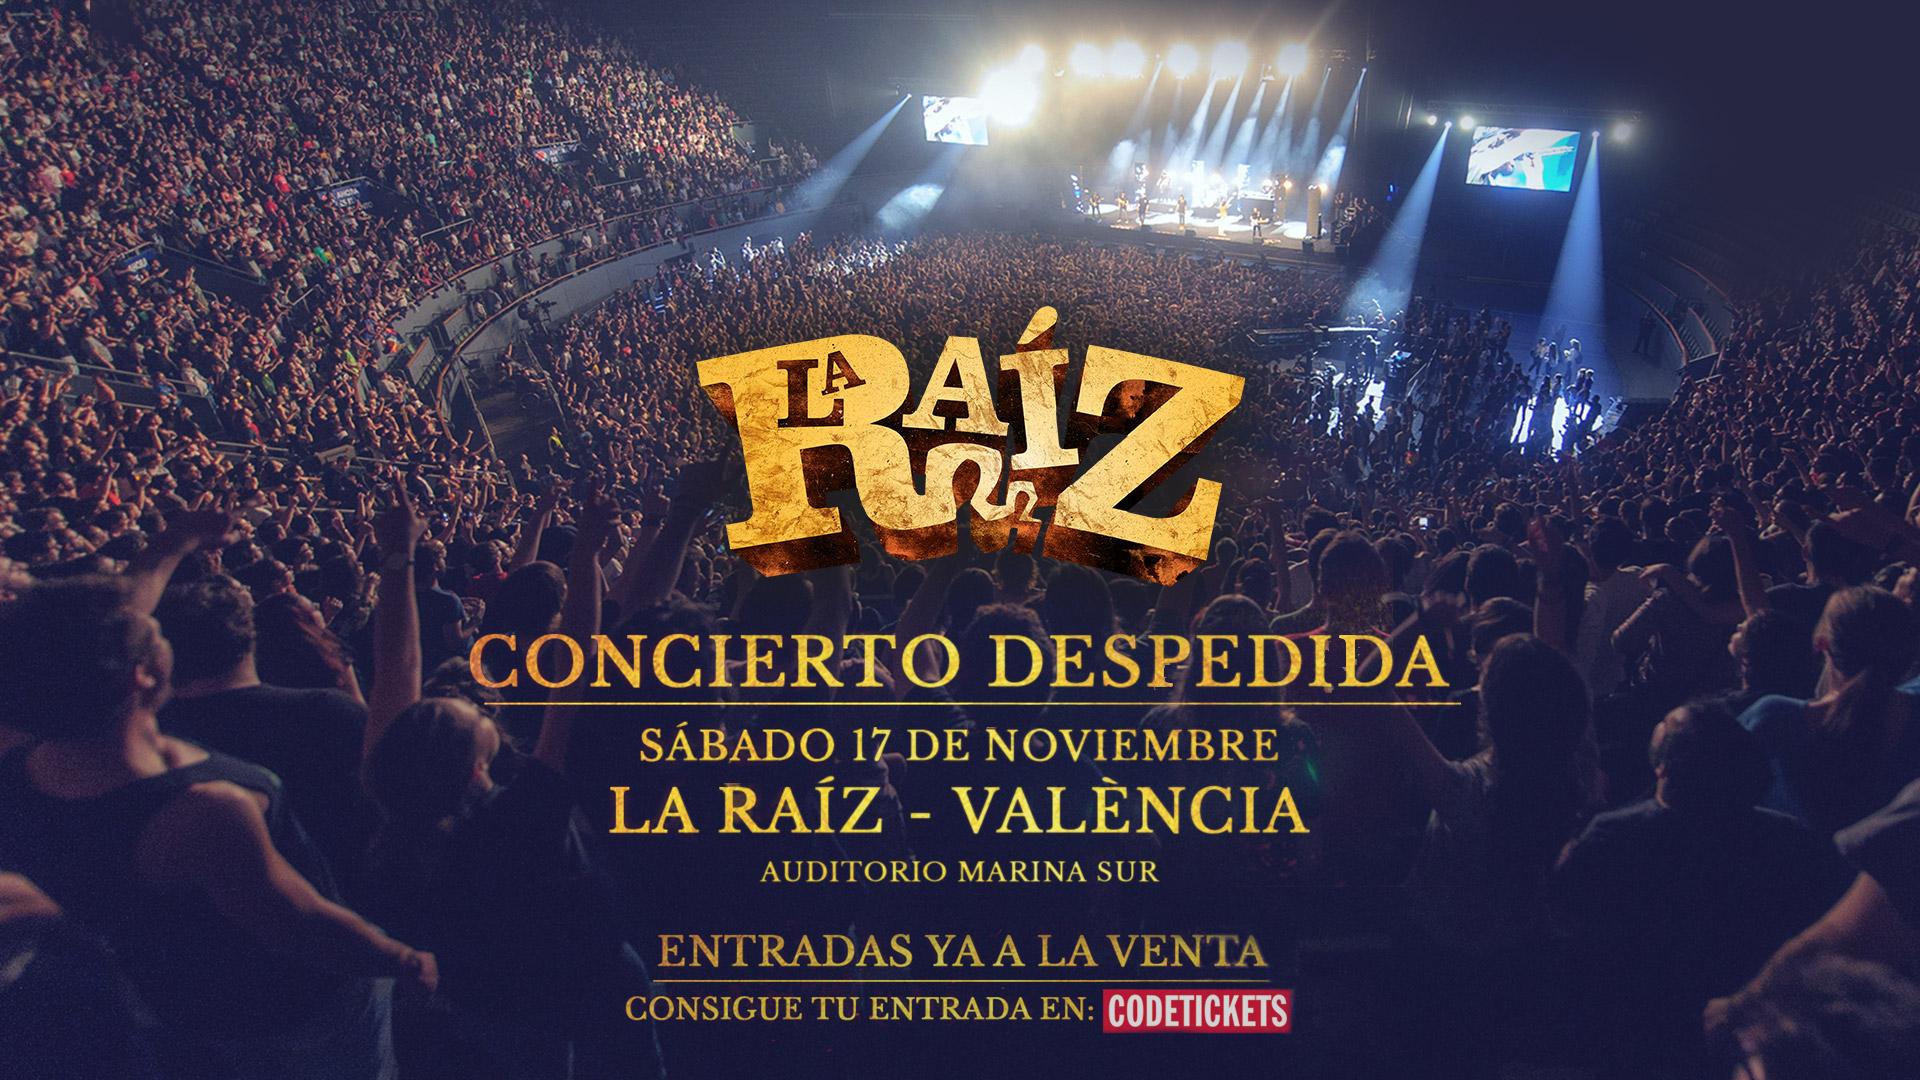 La despedida de La Raíz en Madrid ya está sin entradas a 4 meses vista… última llamada para BCN y Valencia!